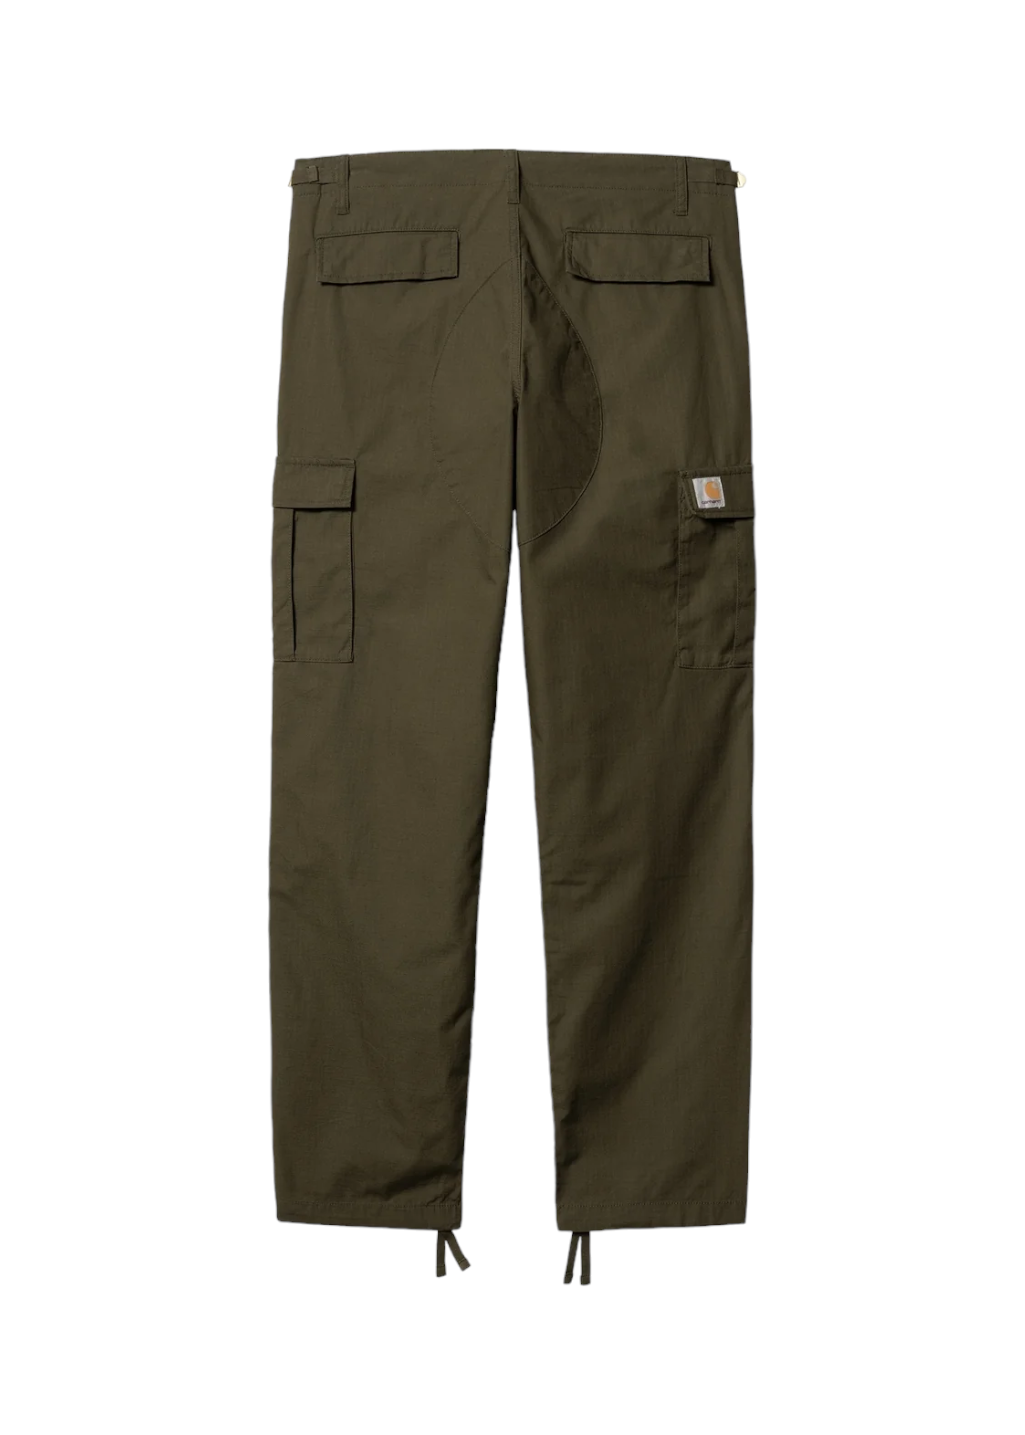 Sunrise Streetwear - Carhartt WIP Aviation Pants for Women ✨